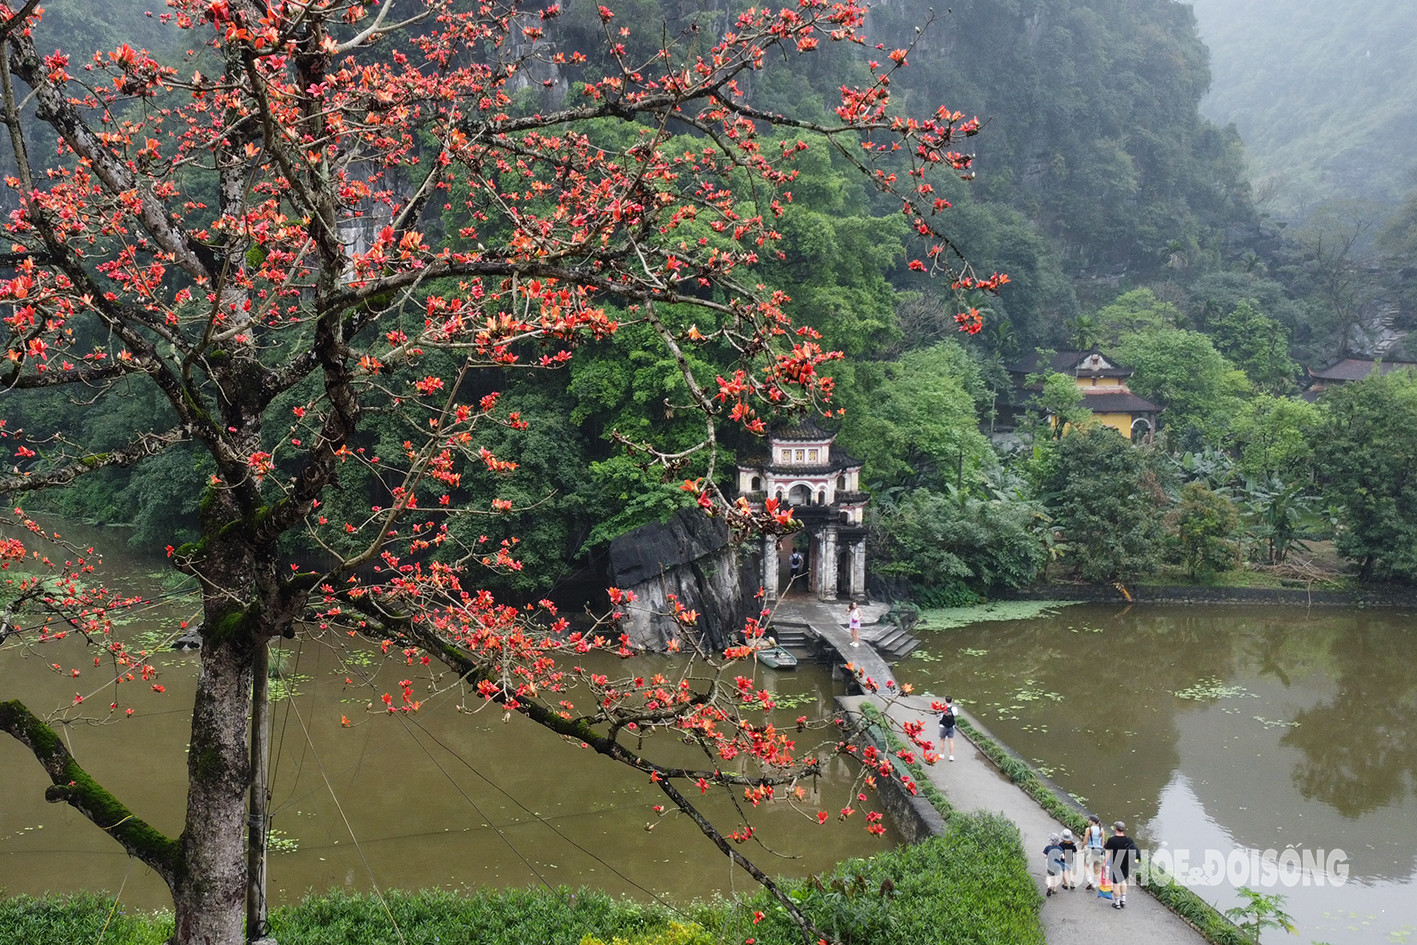 Mê mẩn sắc đỏ của cây gạo trăm tuổi bên mái chùa rêu phong ở Ninh Bình- Ảnh 1.